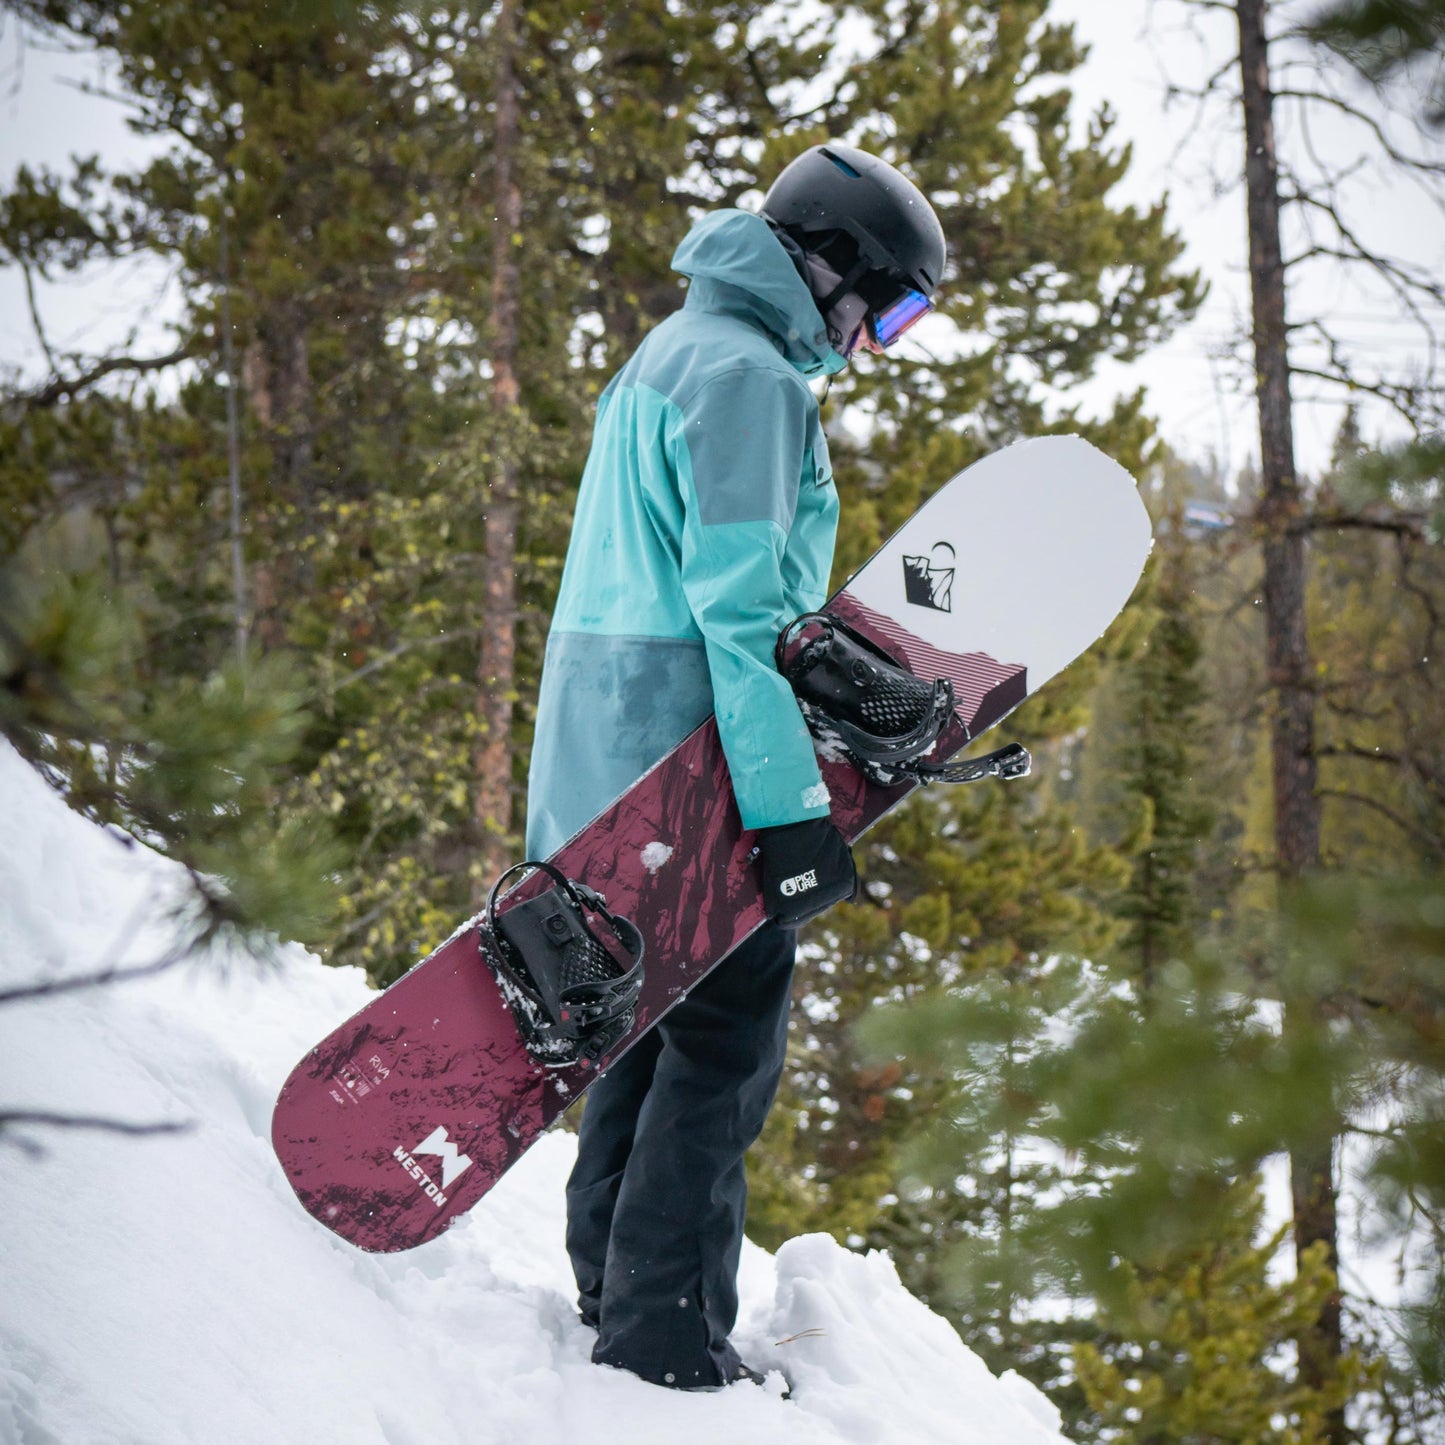 Riva Snowboard Demo